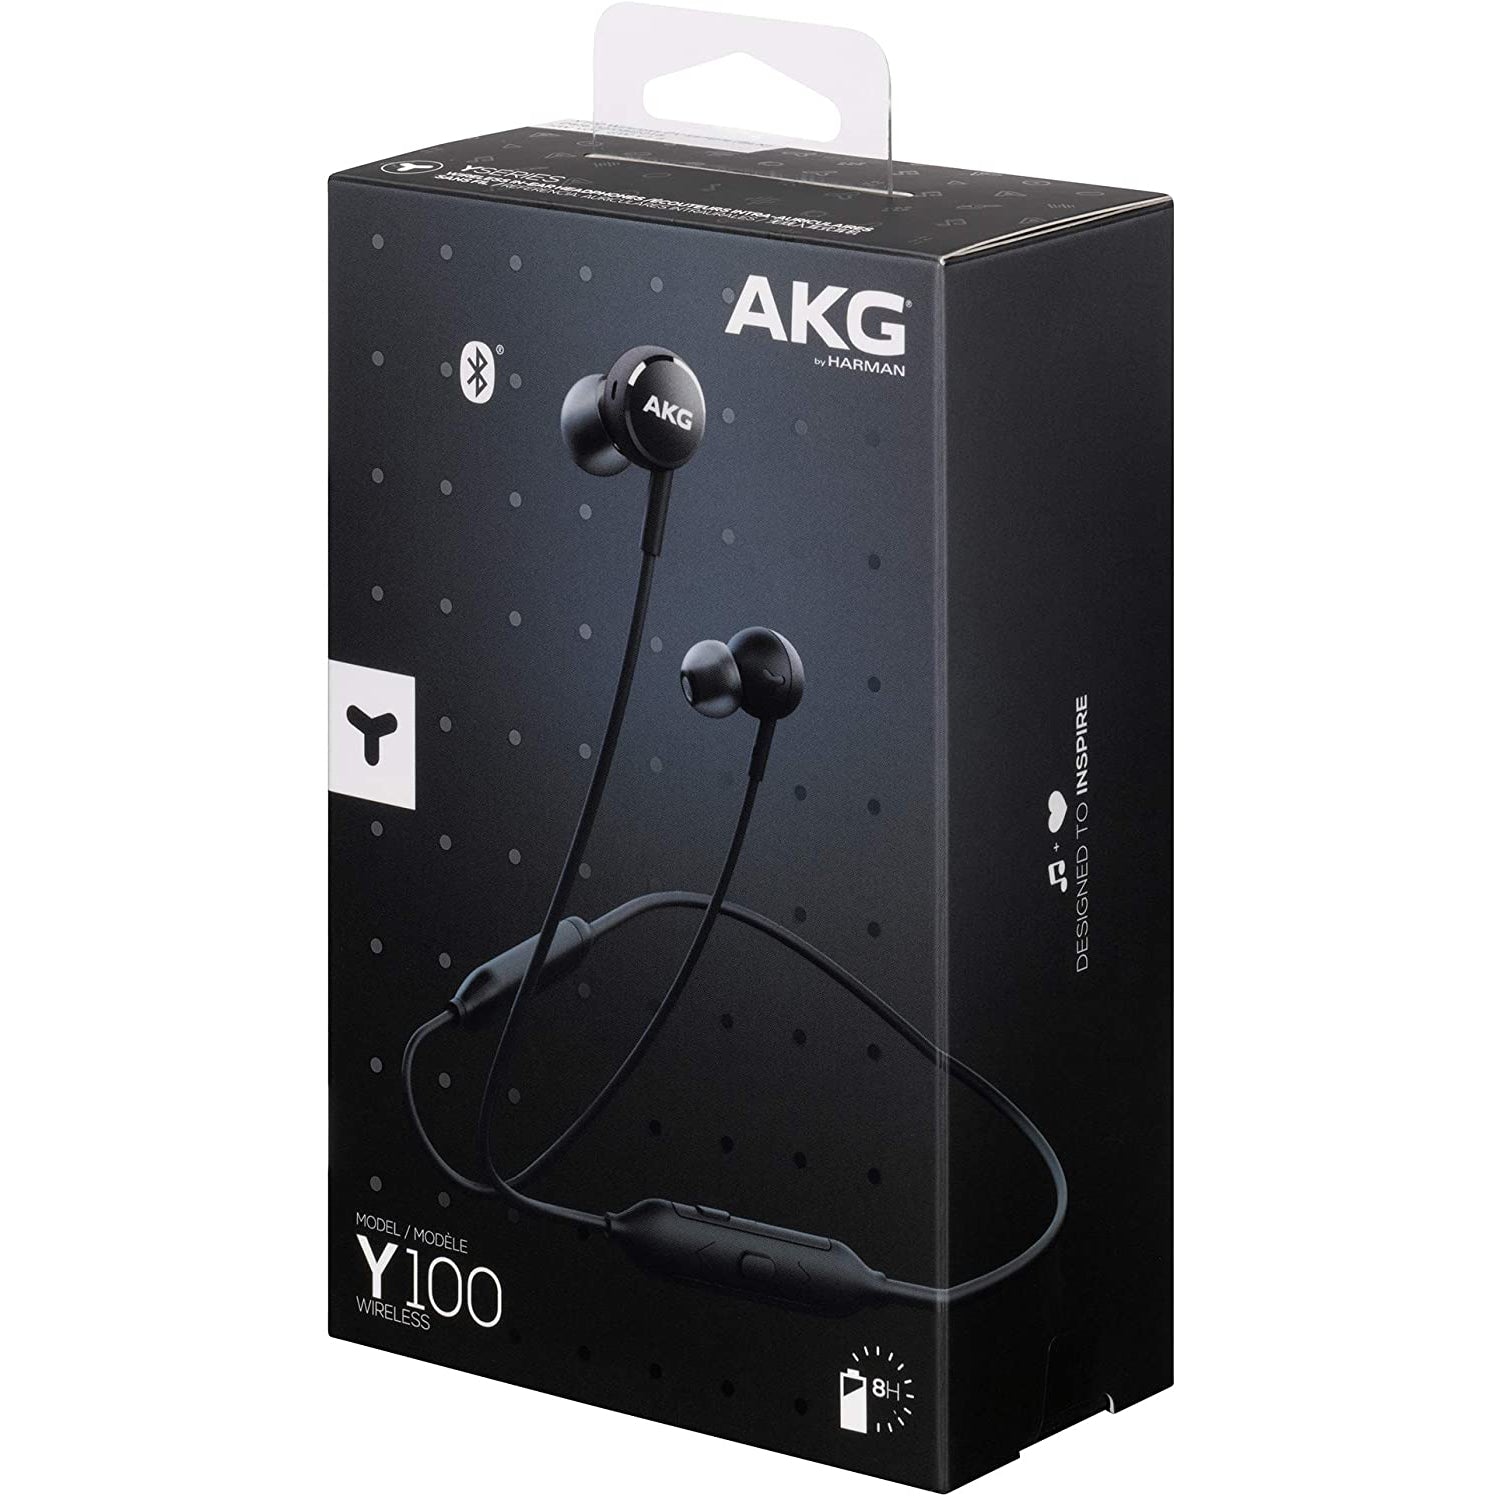 AKG Y100 Wireless In-Ear Headphones - Black - Refurbished Pristine